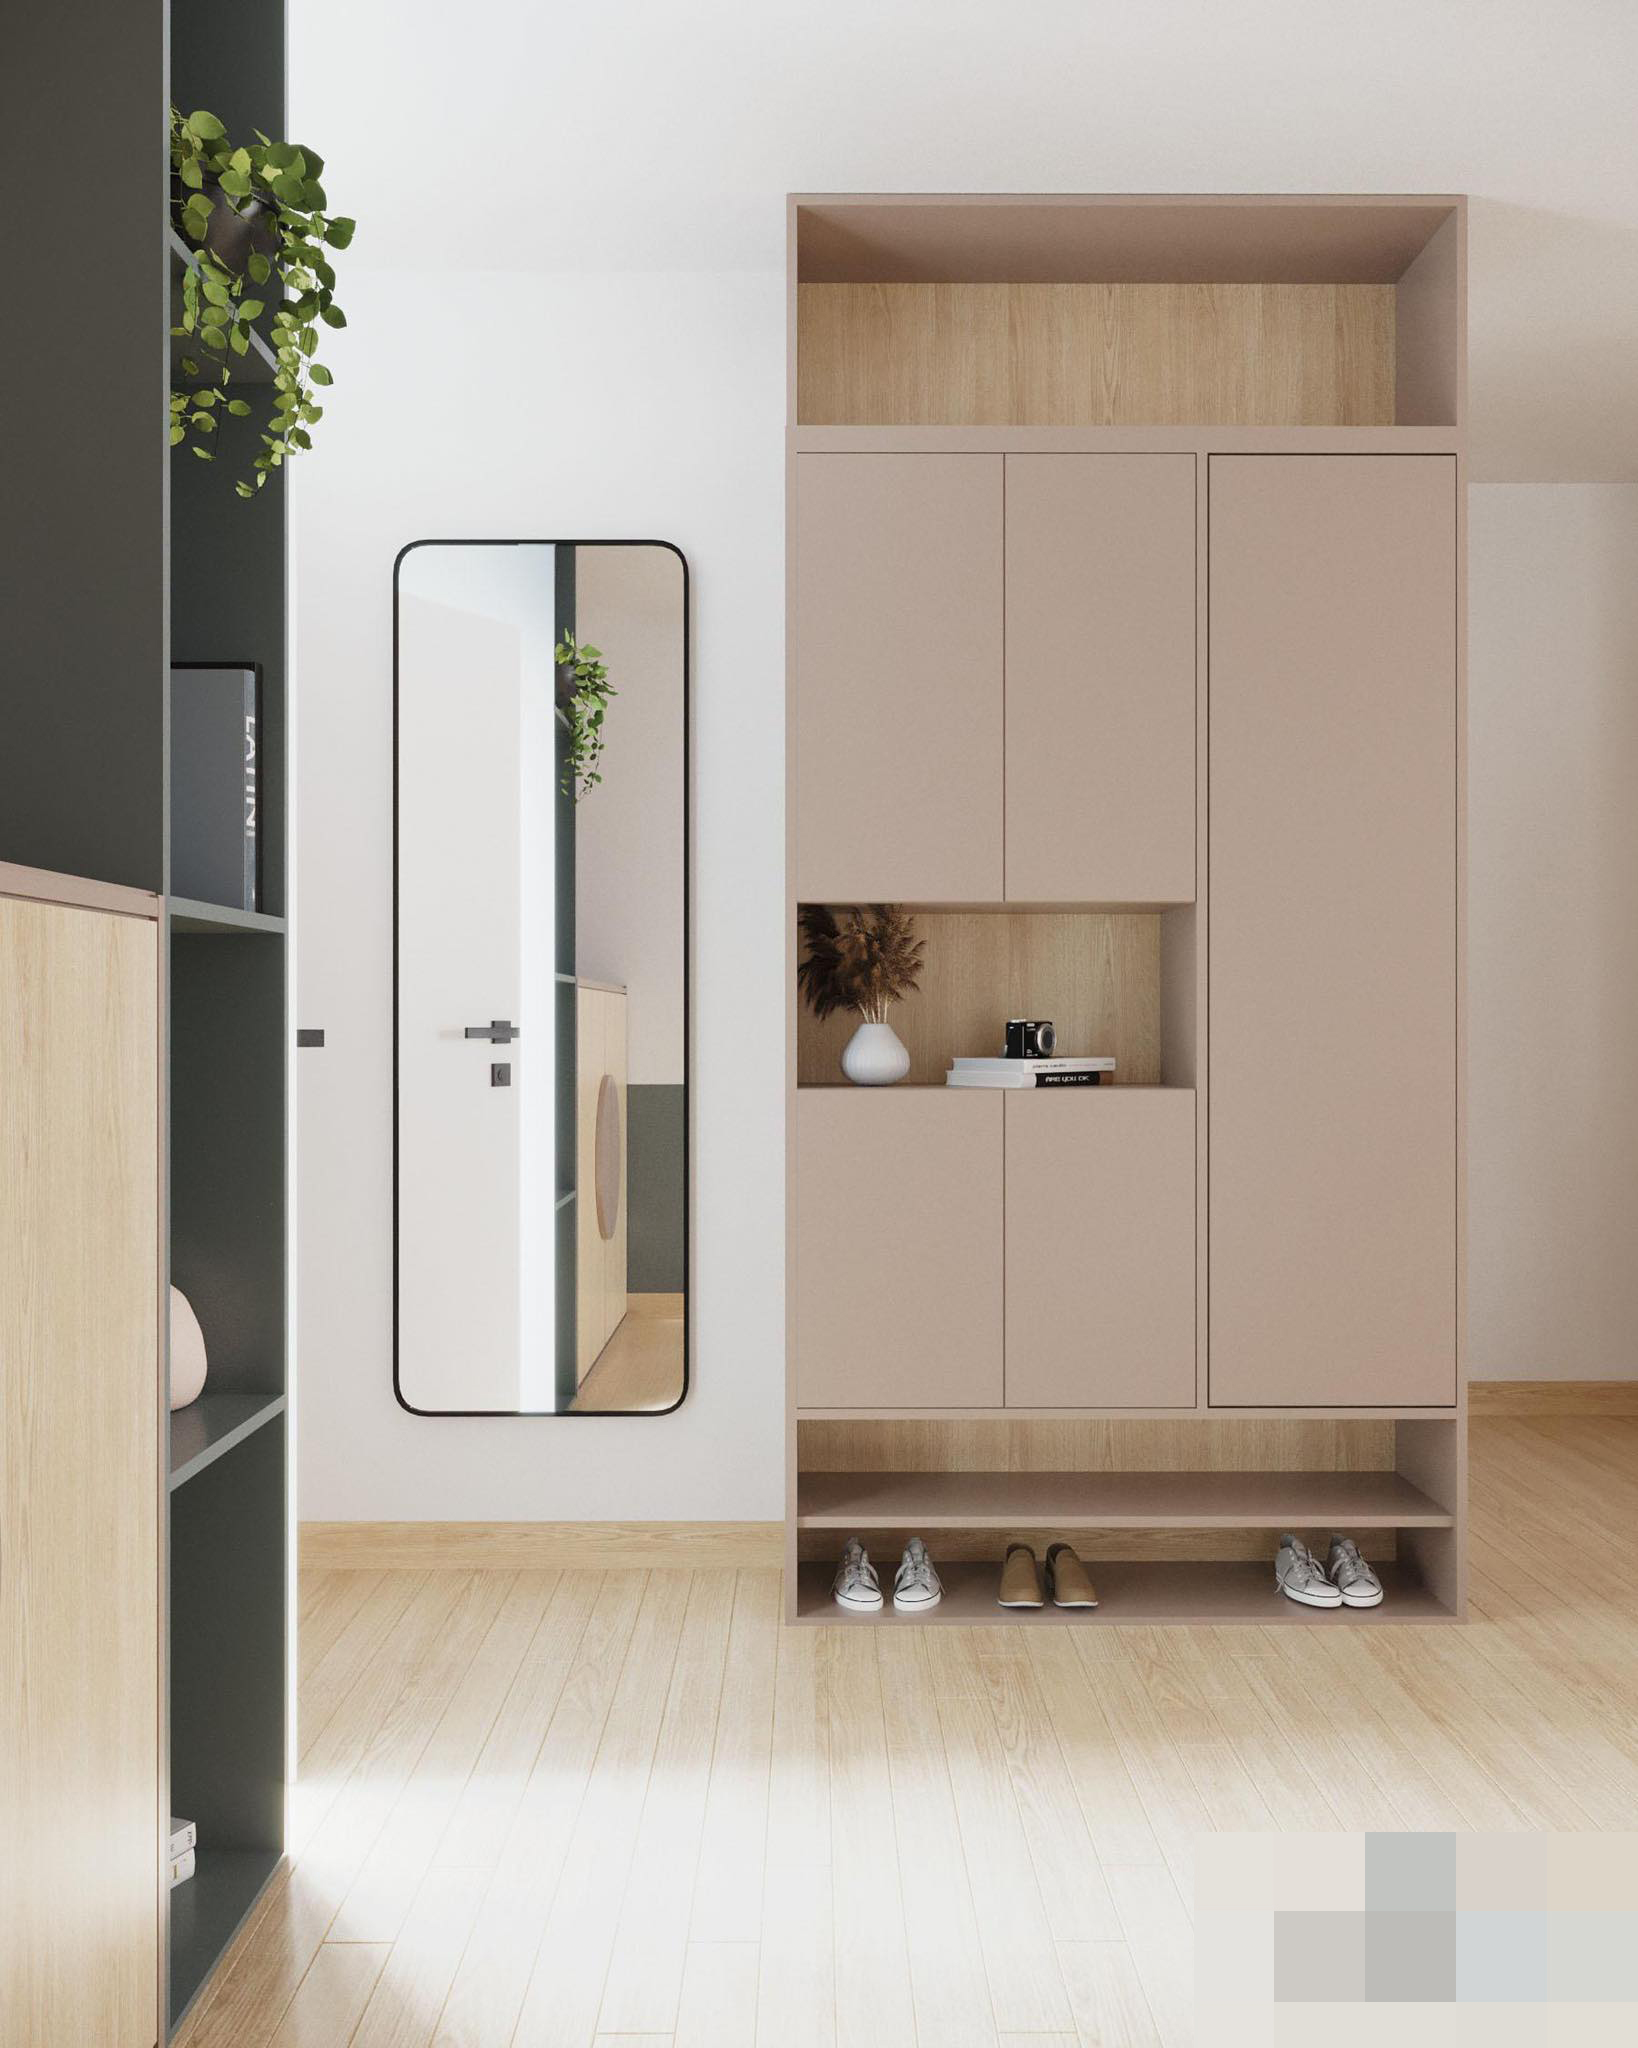 Chút biến tấu cho căn hộ nhỏ, không gian rộng hơn nhờ nội thất thông minh - Ảnh 3.